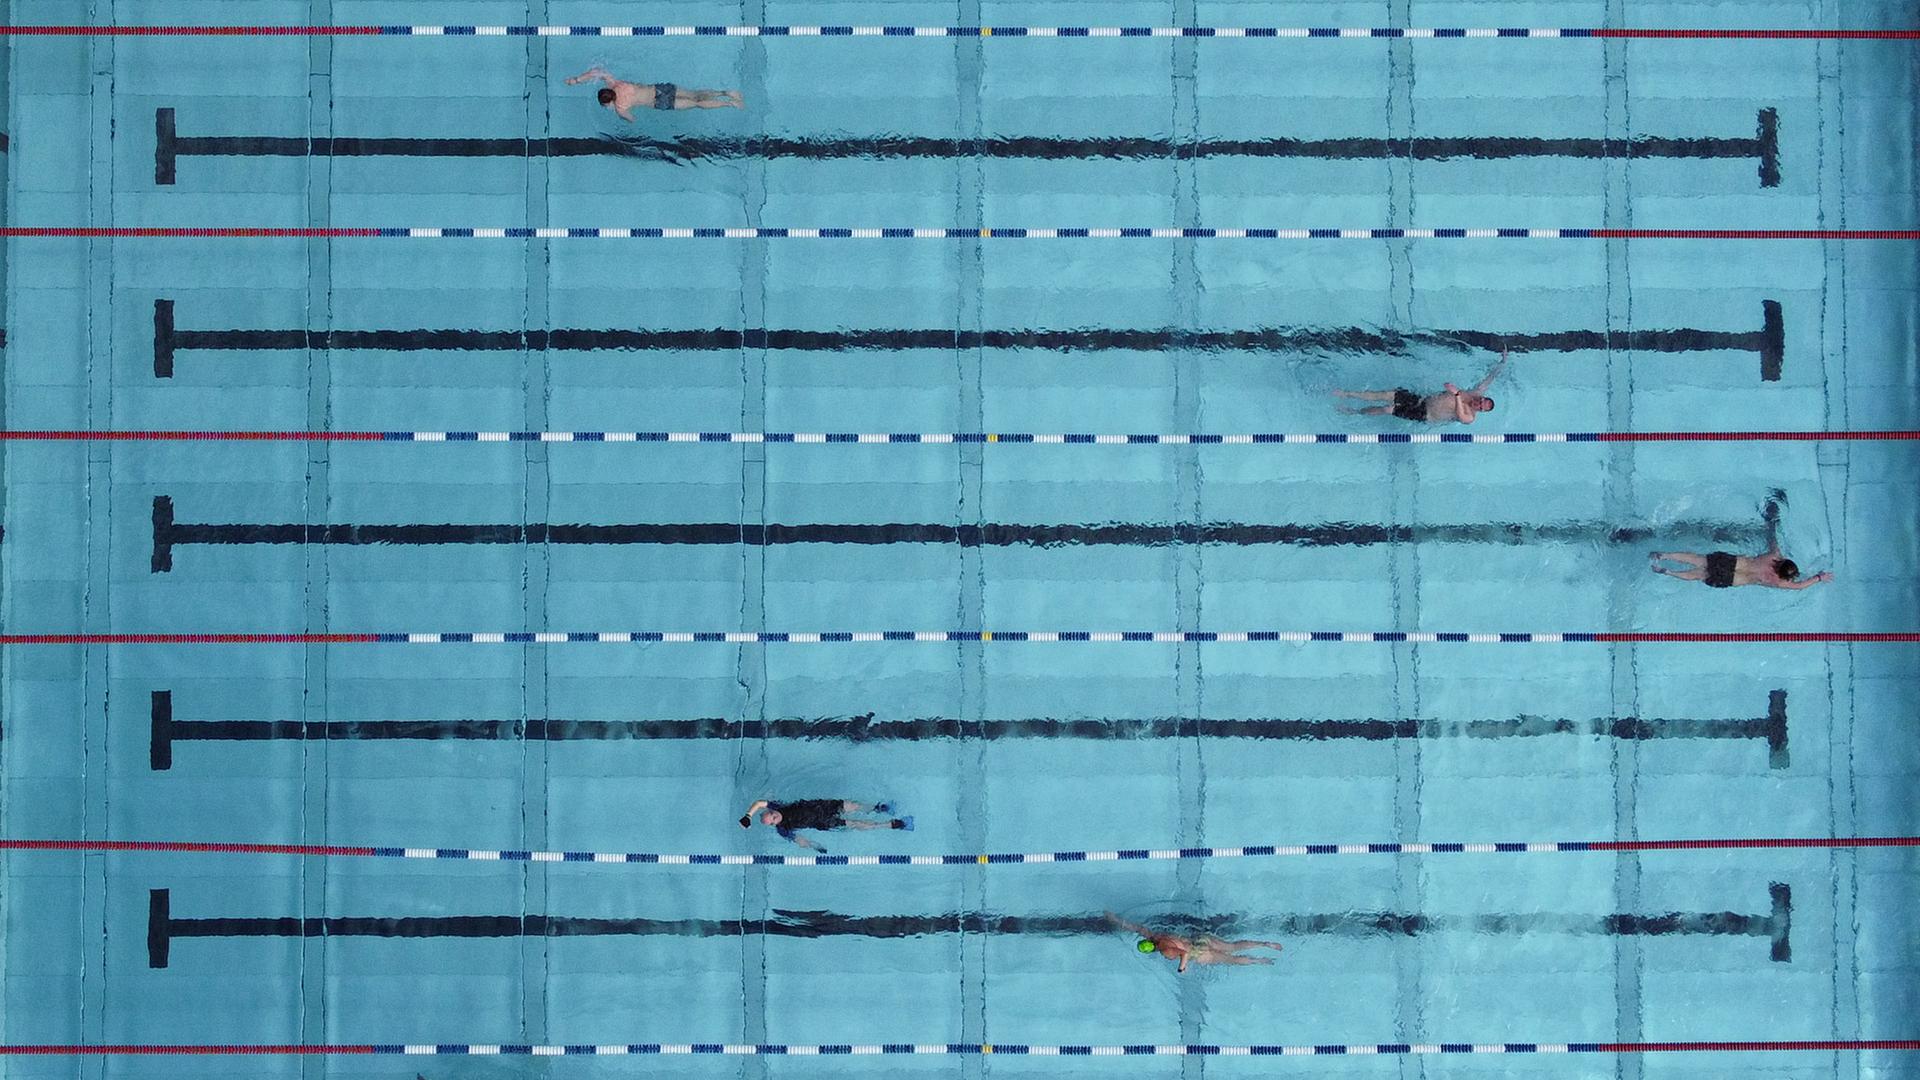 Schwimmer ziehen im Becken des Freibads Frankurt-Hausen ihre Bahnen (Luftaufnahme mit einer Drohne).